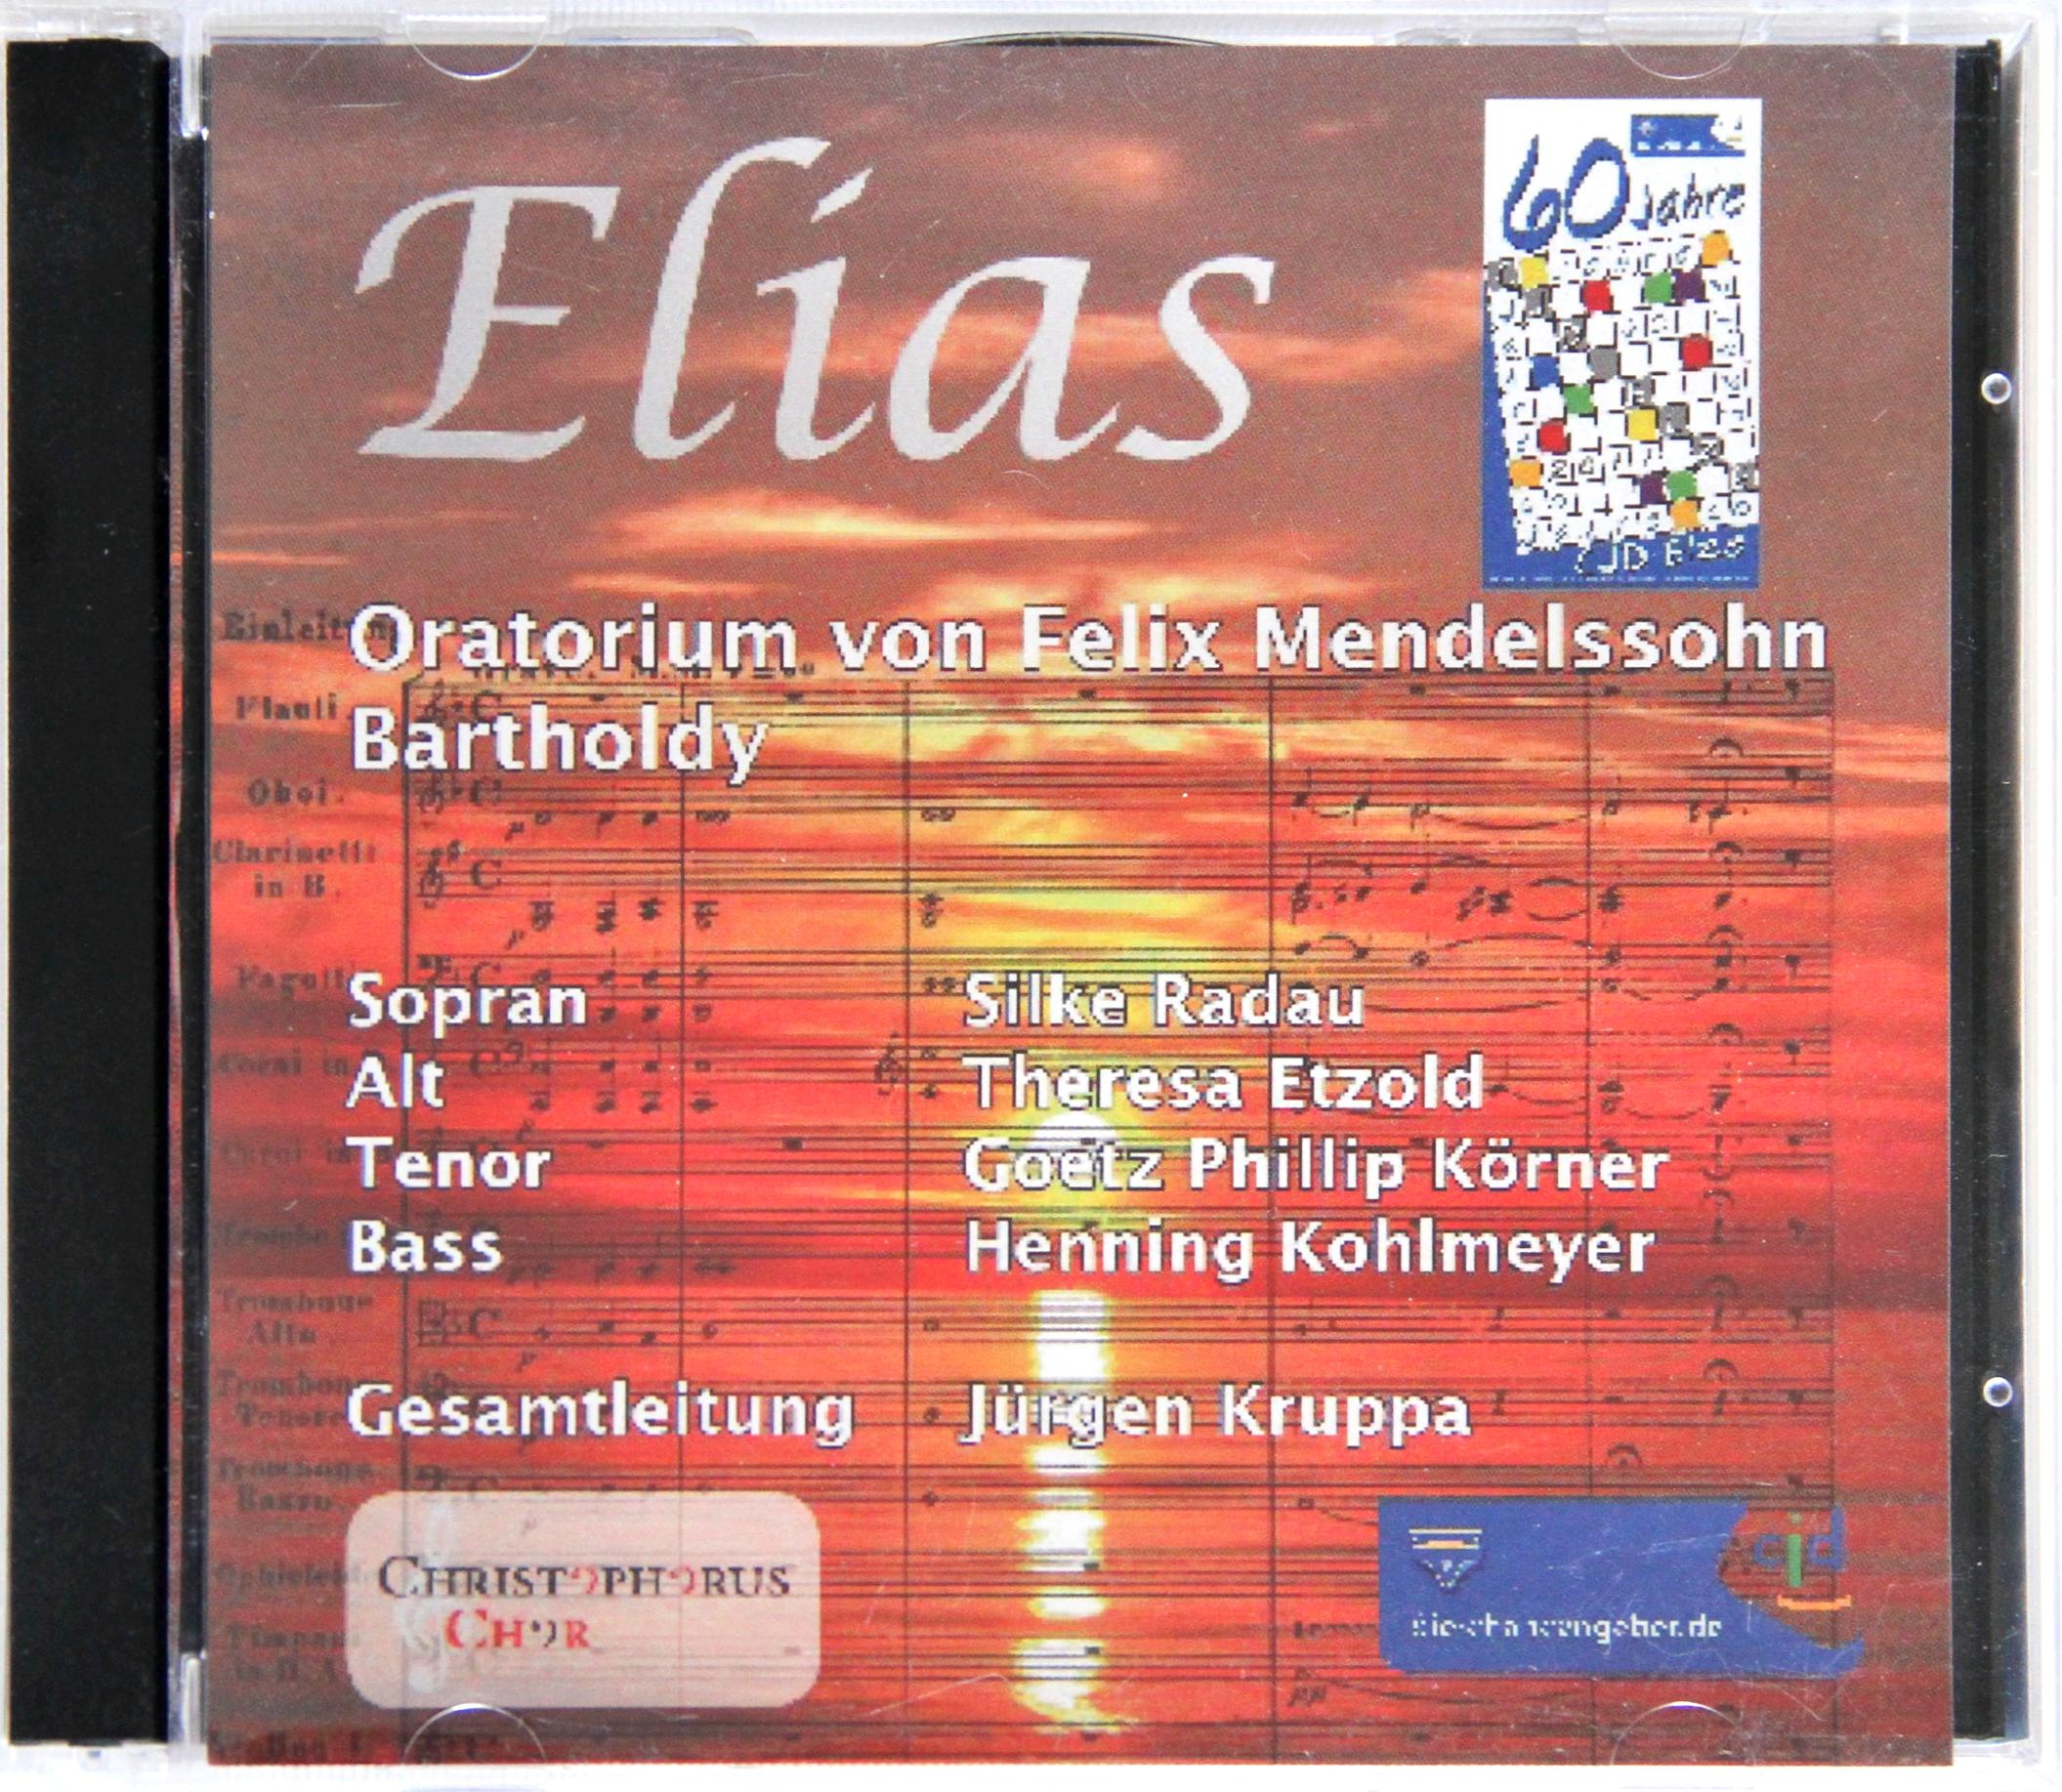 Elias – Felix Mendelssohn Bartholdy